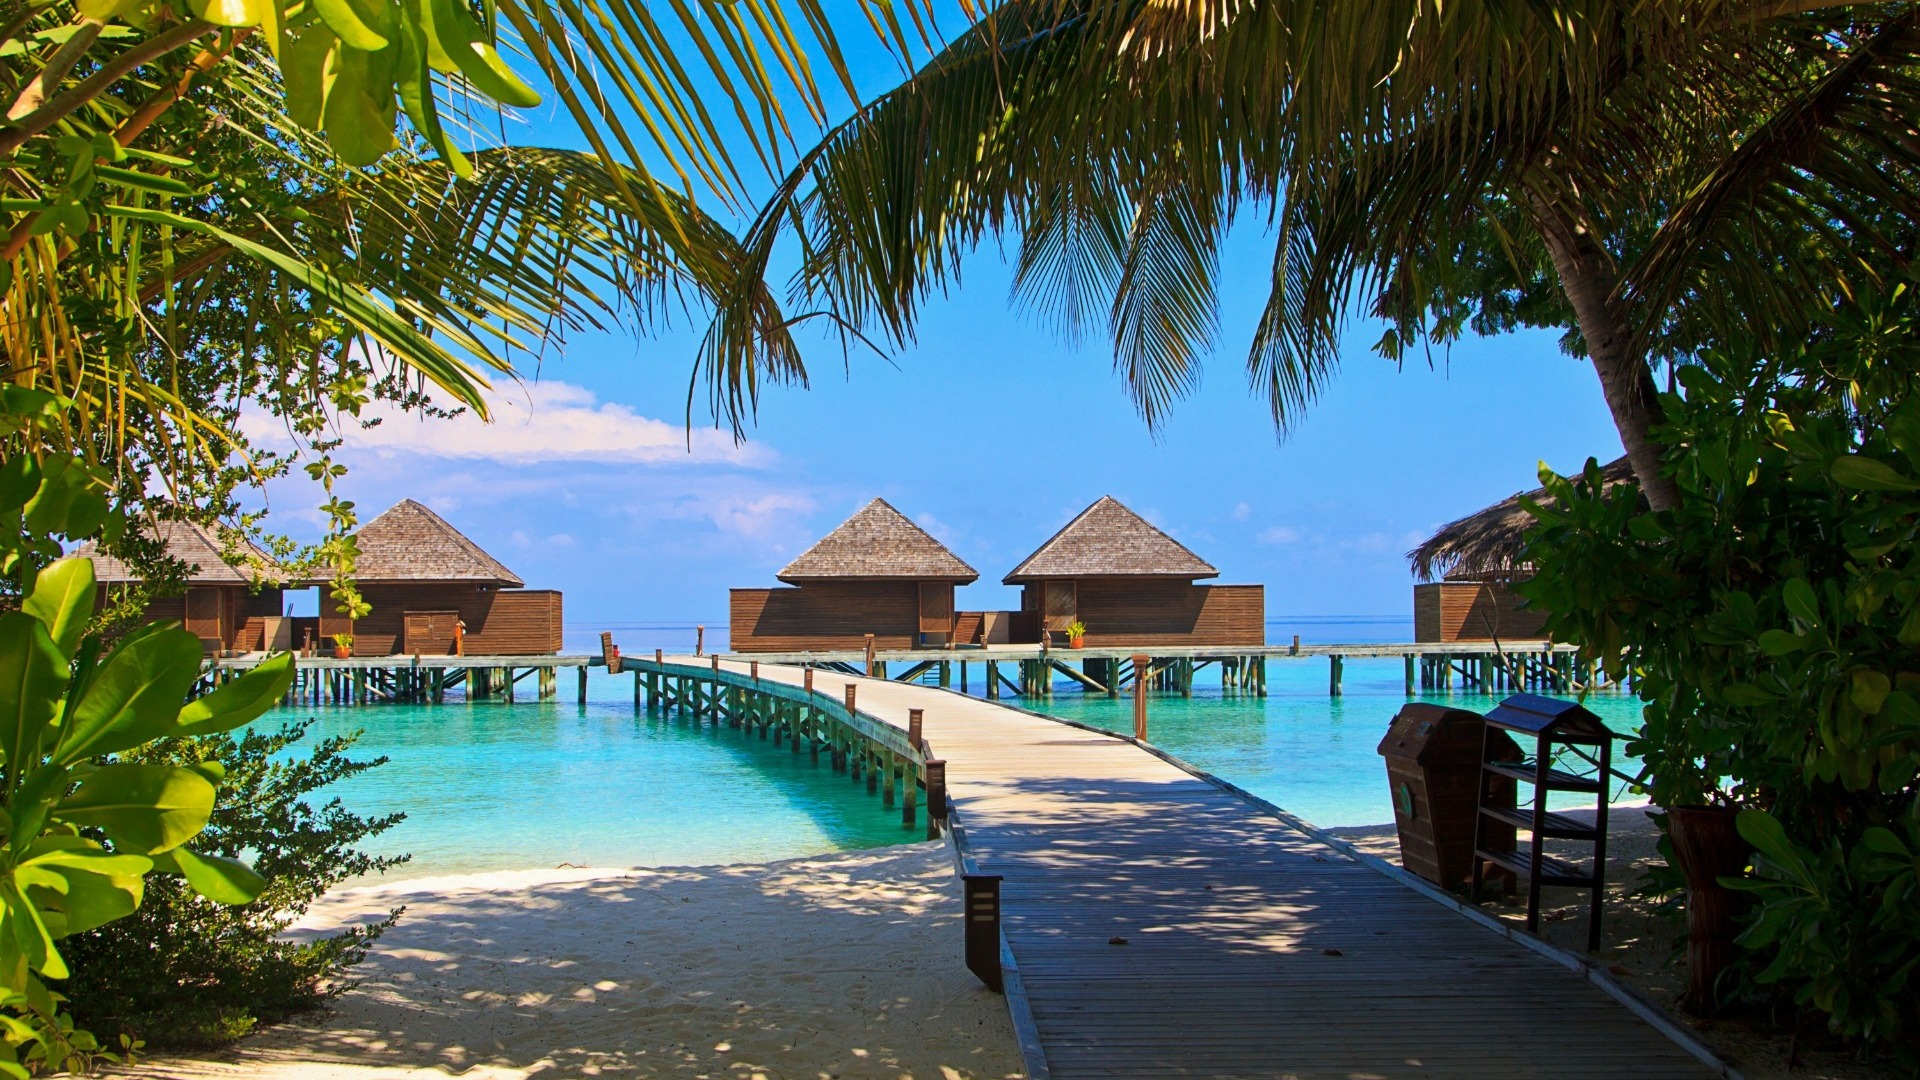 Полмиллиона на отдых — самым дорогим туром стала поездка на Мальдивы